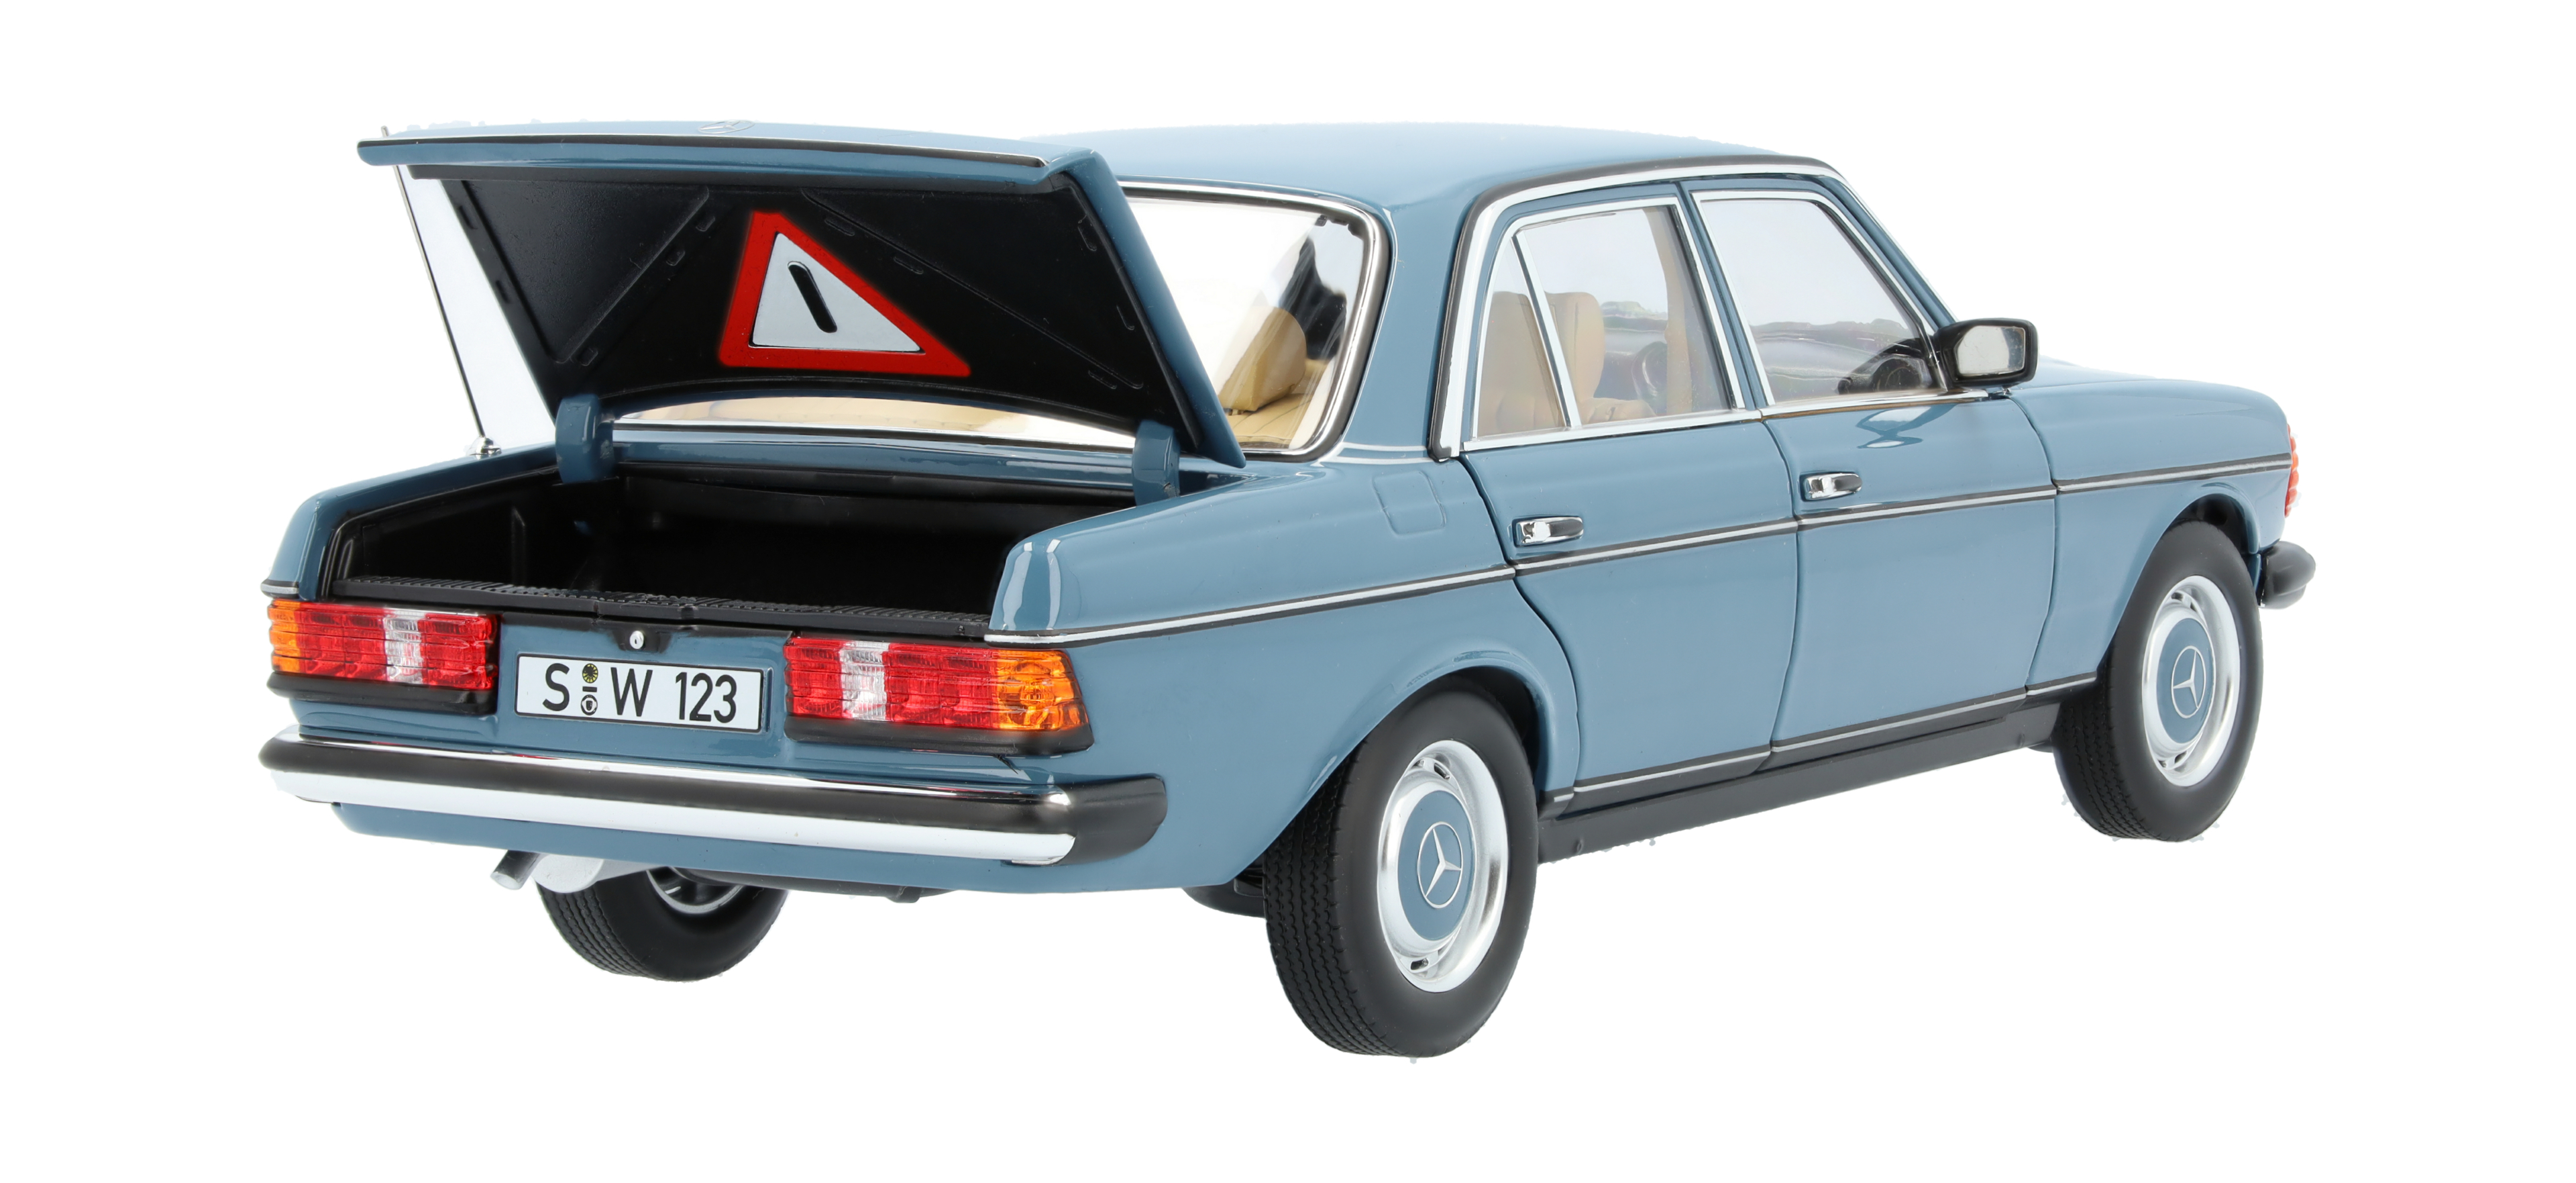 200 W123 (1980-1985) - blau, Norev, 1:18